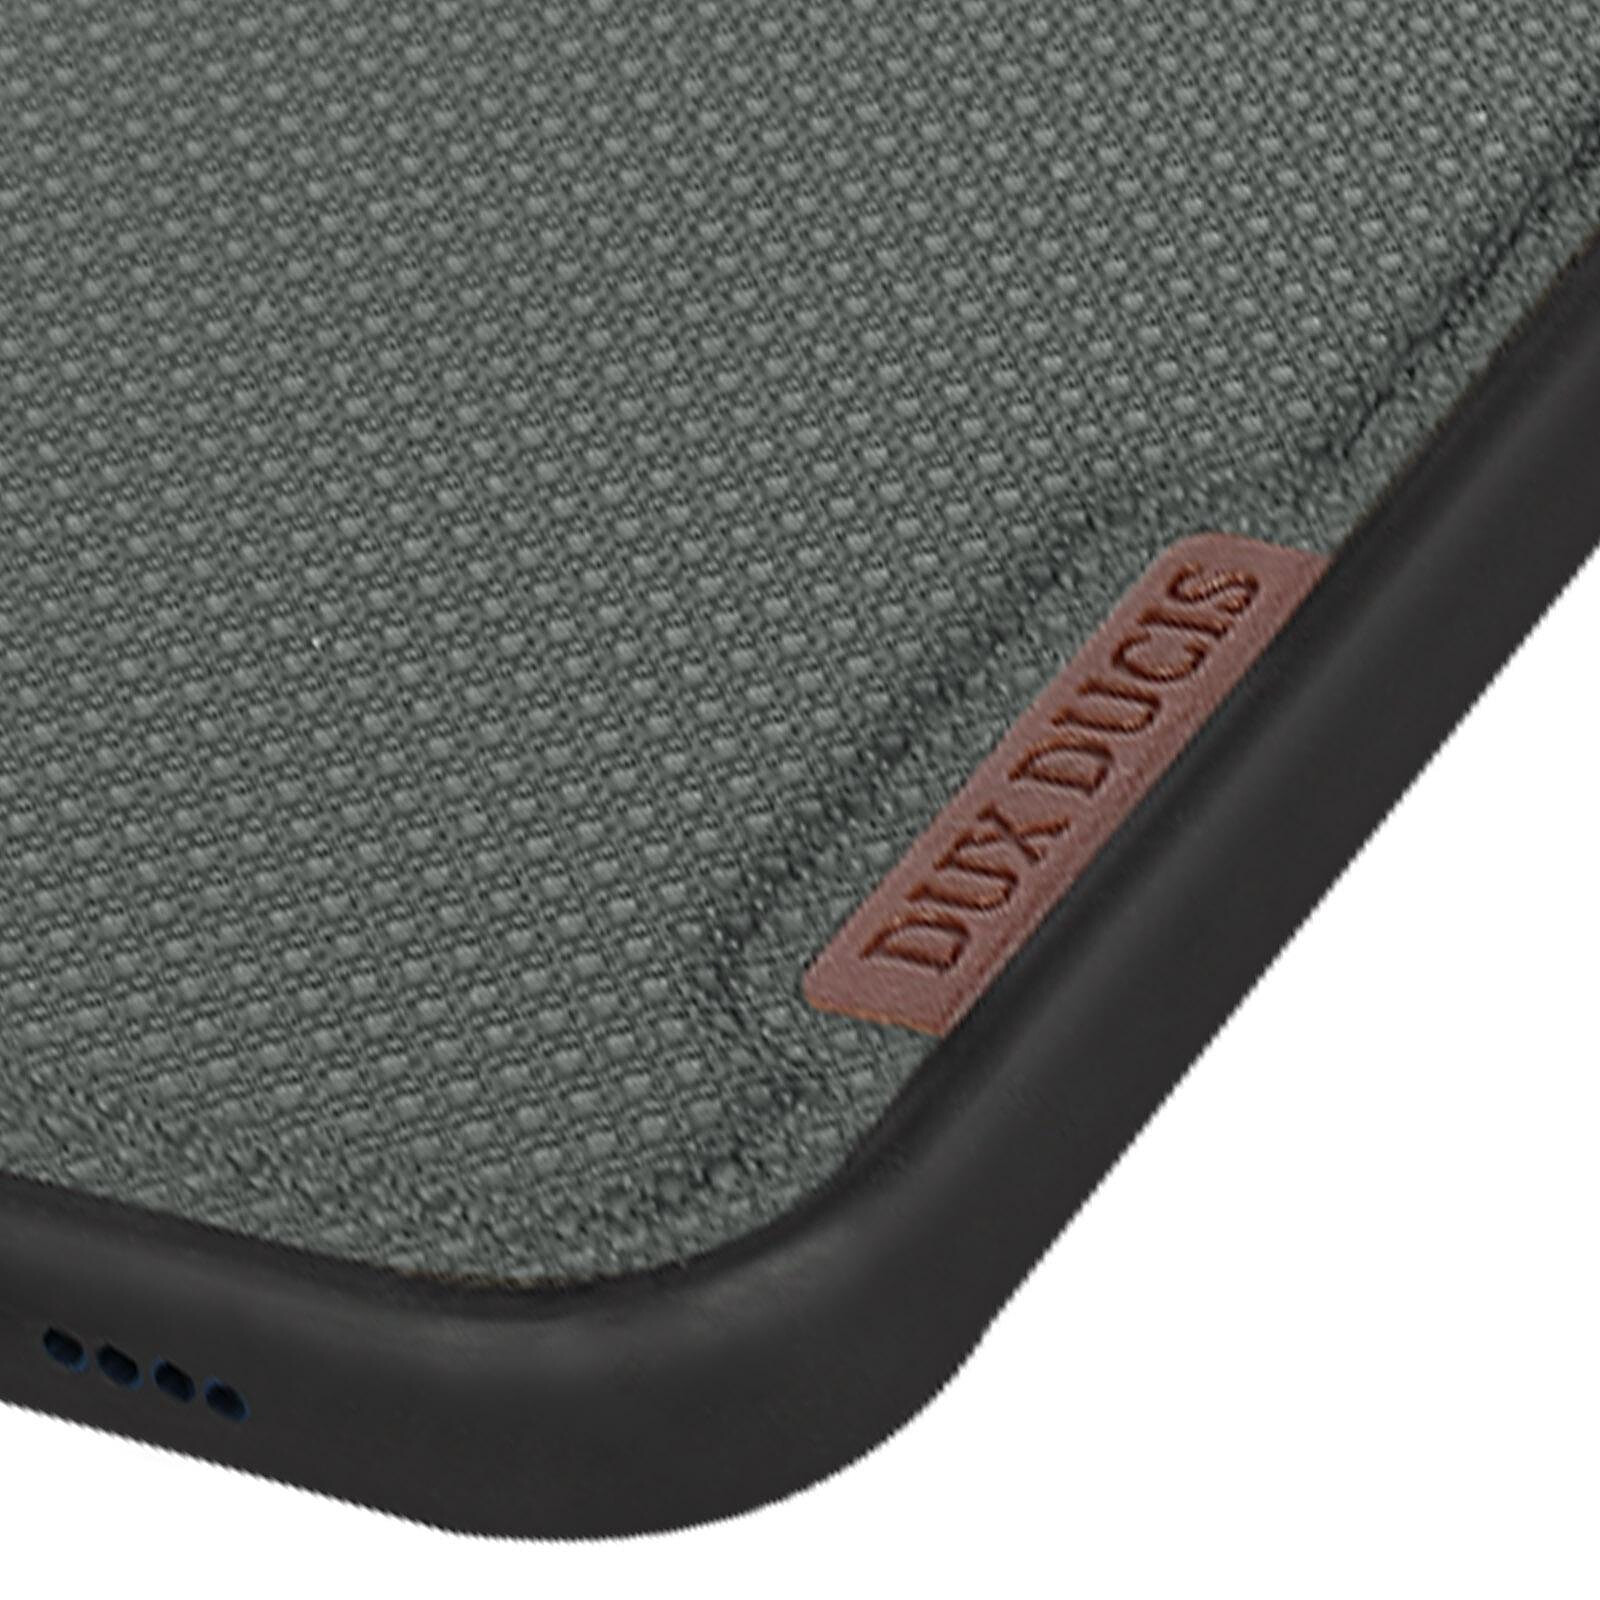 RhinoShield Coque pour iPhone 13 Pro Max Mode Bumper et Renforcé Mod NX  graphite - Coque téléphone - LDLC